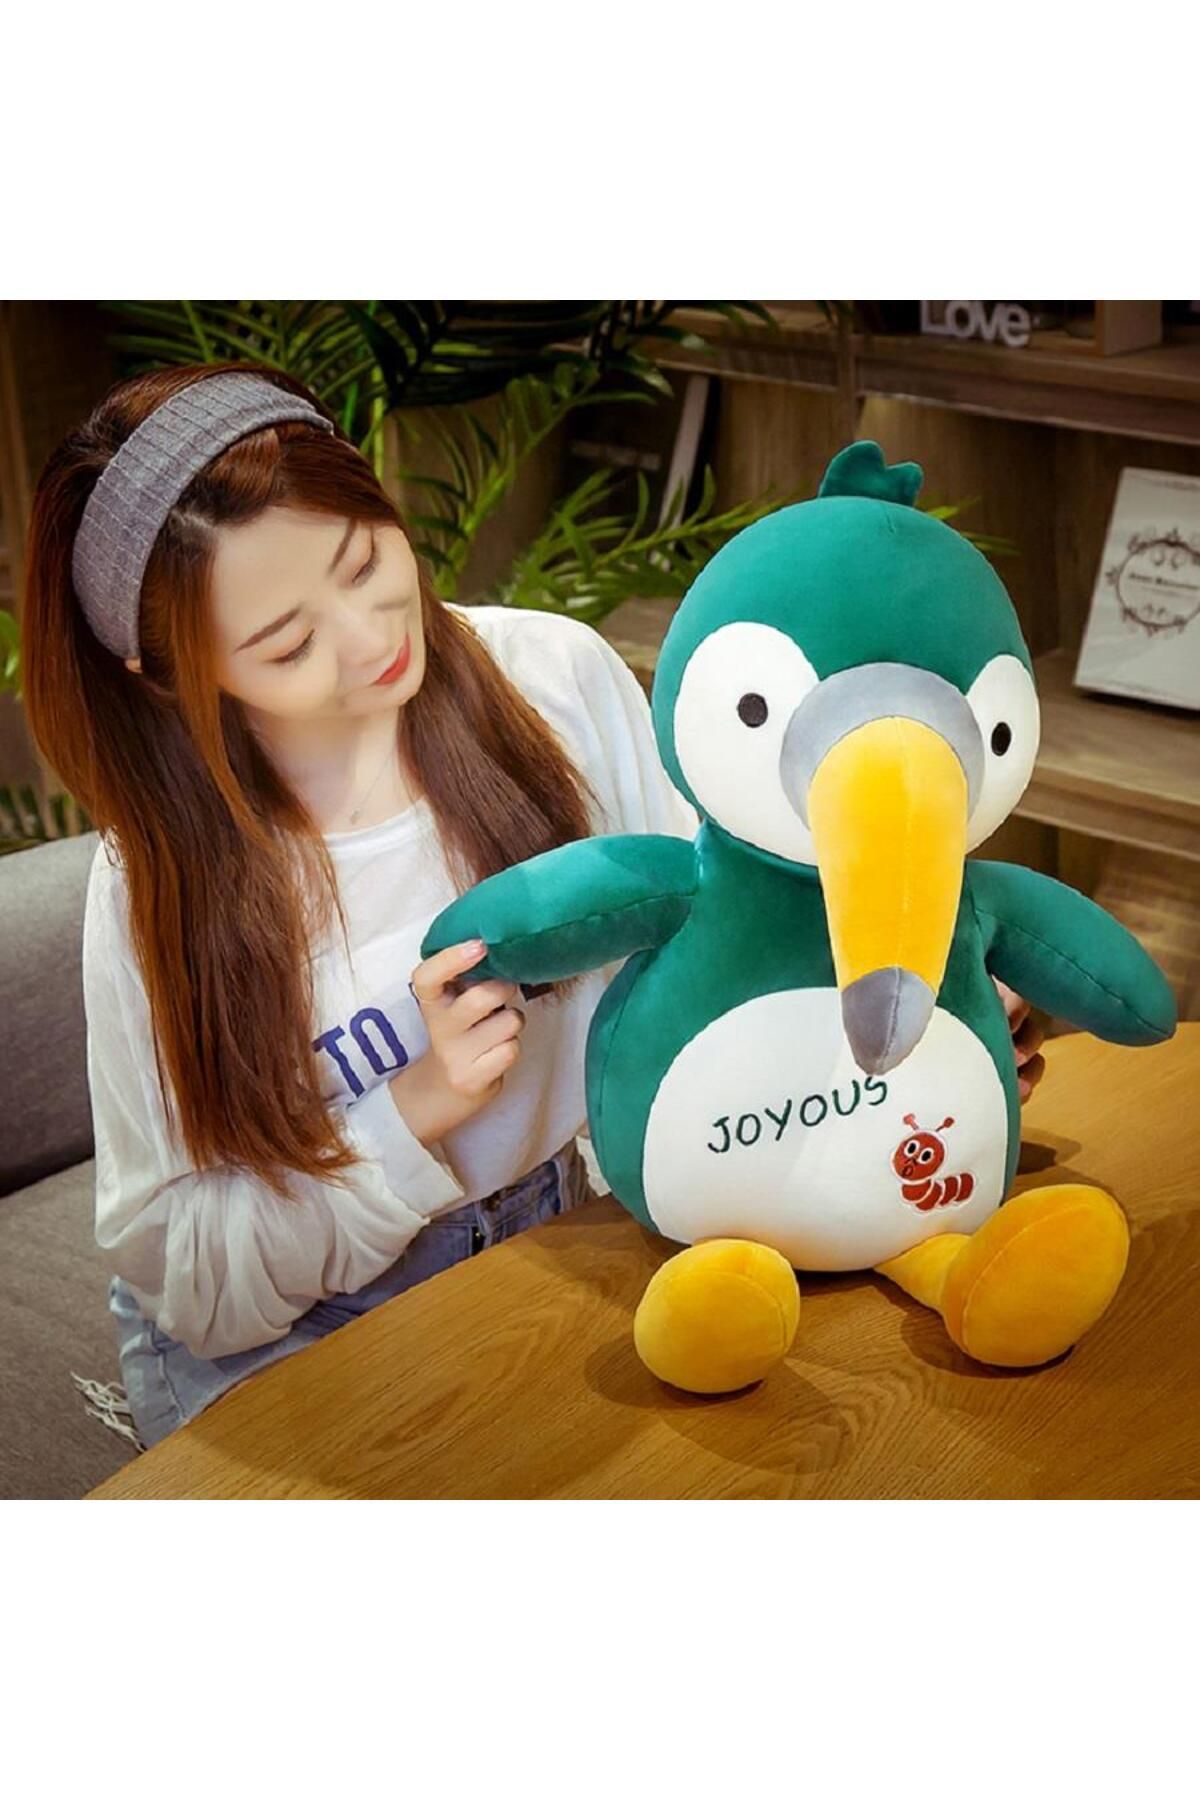 e-life shop Ithal Kumaş Renkli Neşeli Tukan Kuşu Rio Papağanı Peluş Oyuncak & Uyku Arkadaşı Jumbo Boy 60 Cm.